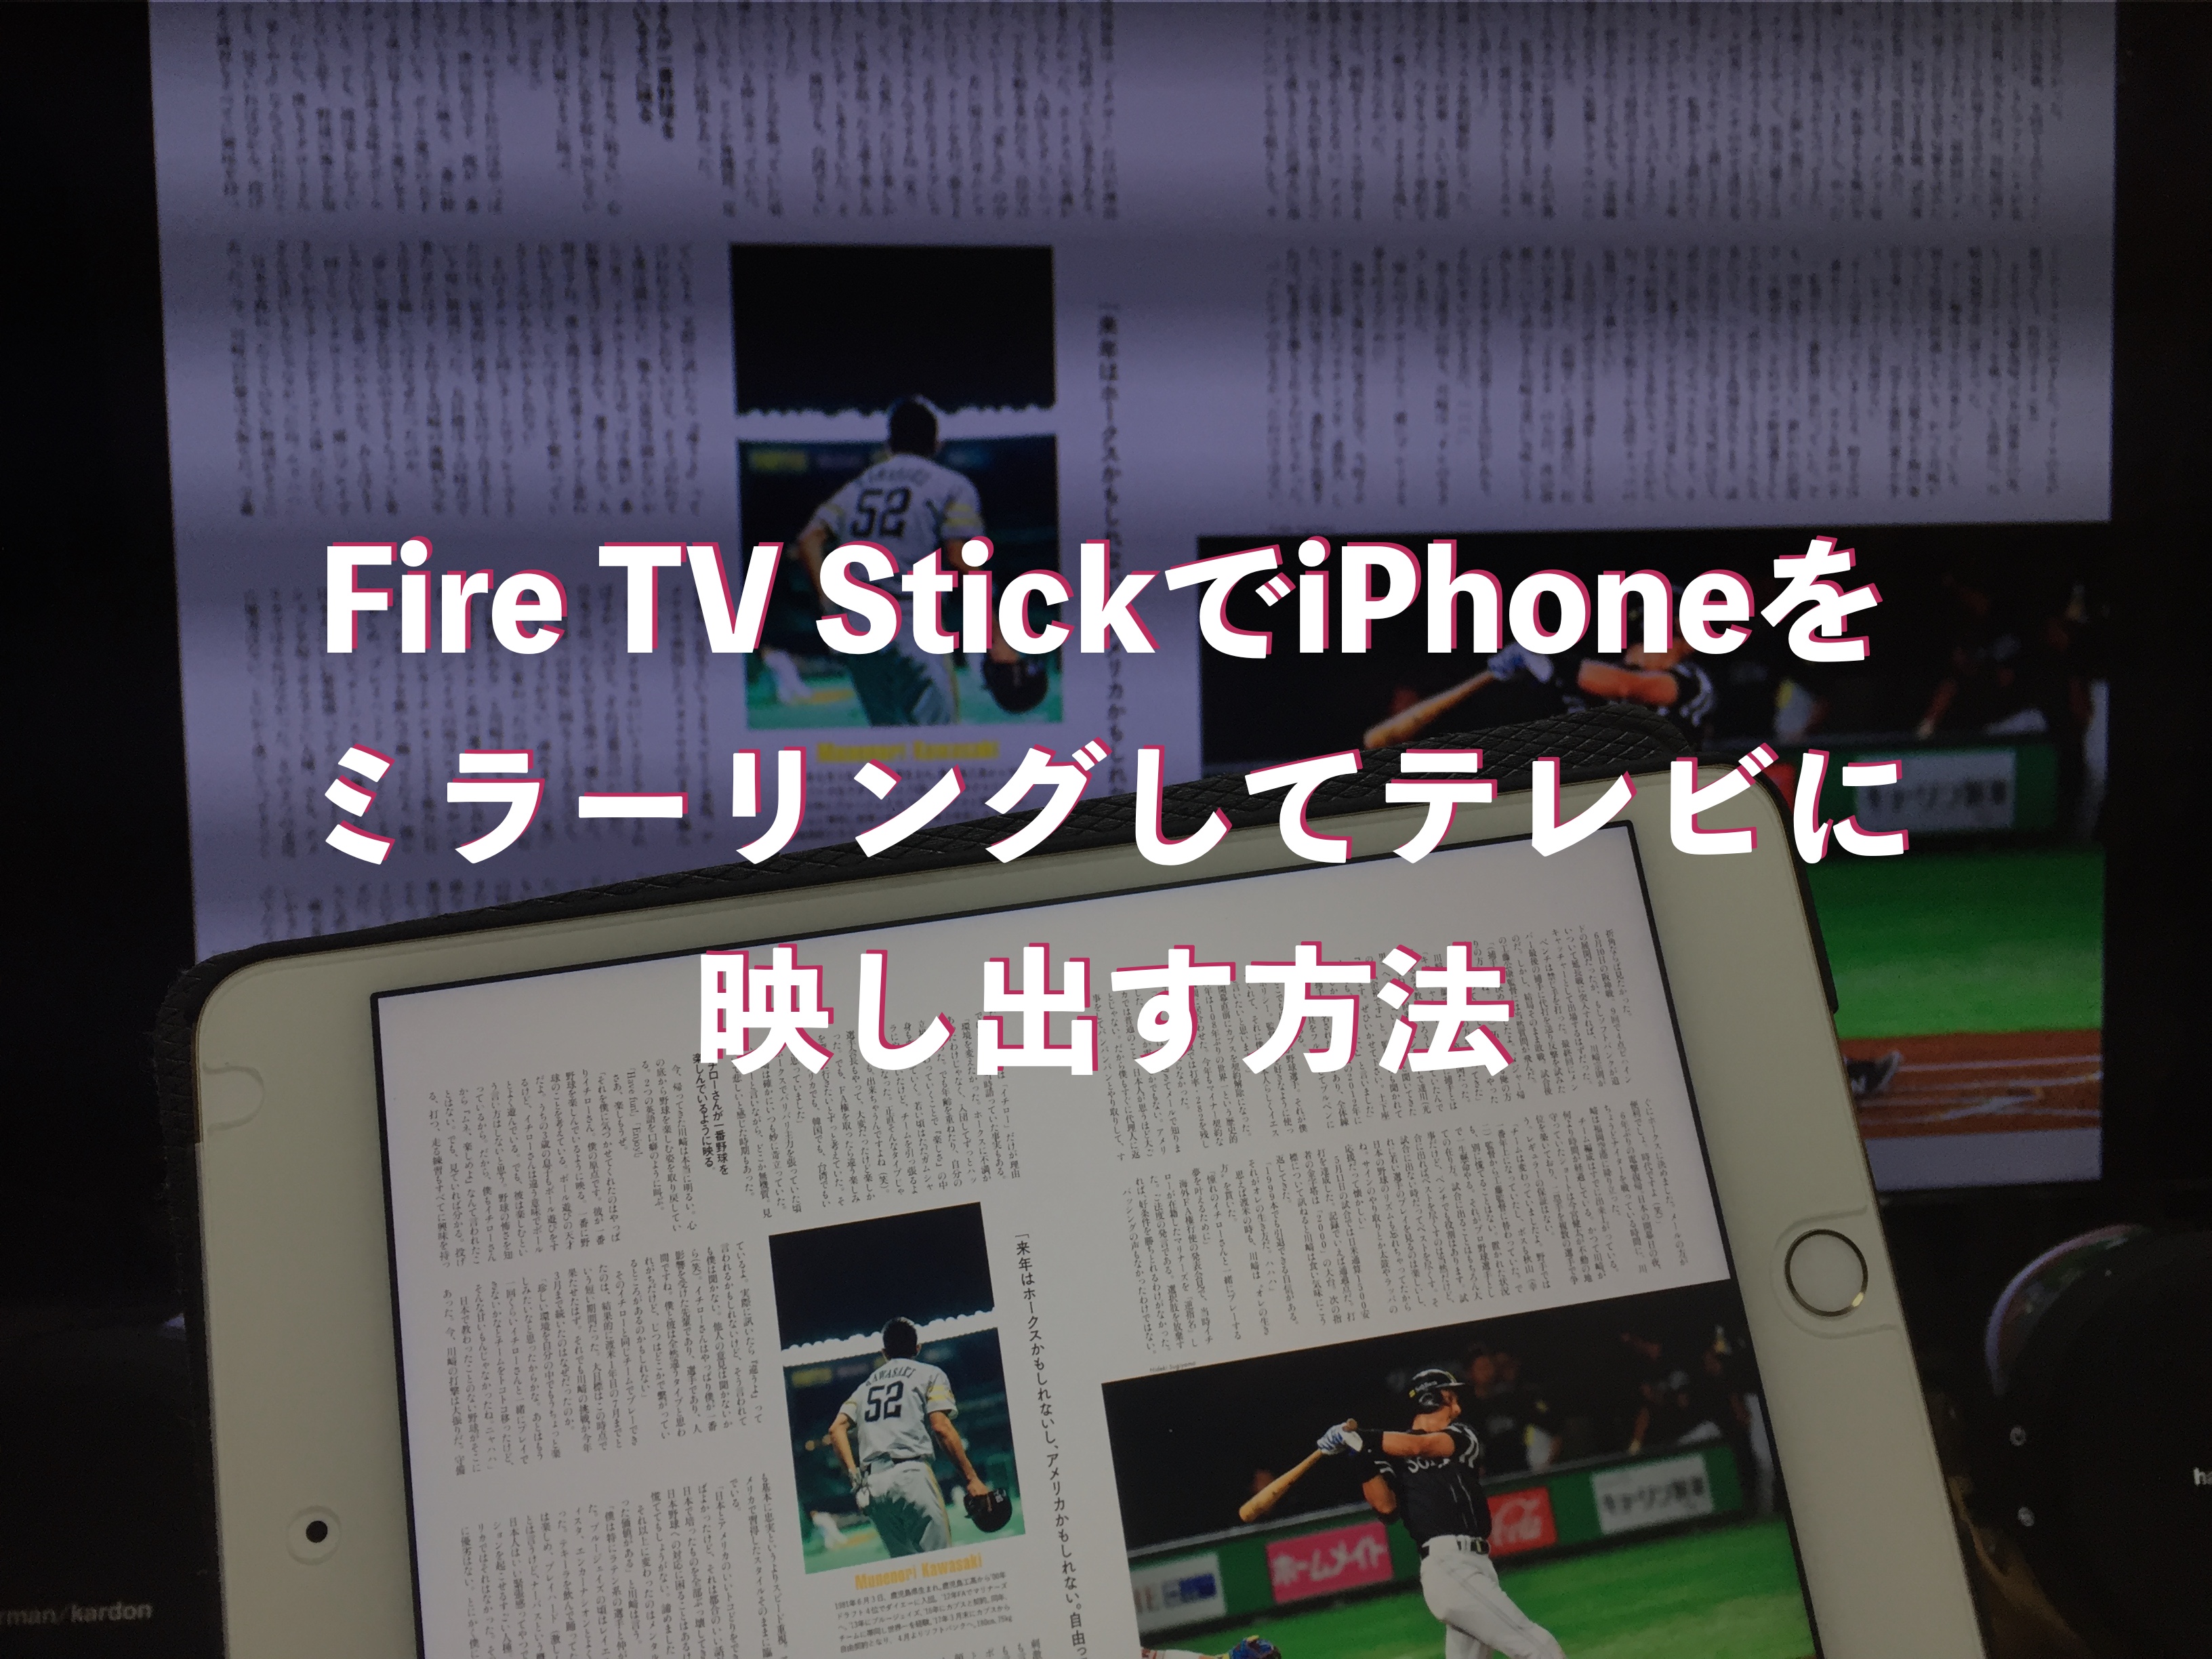 Fire Tv Stickでiphoneをミラーリングしてテレビに映し出す方法